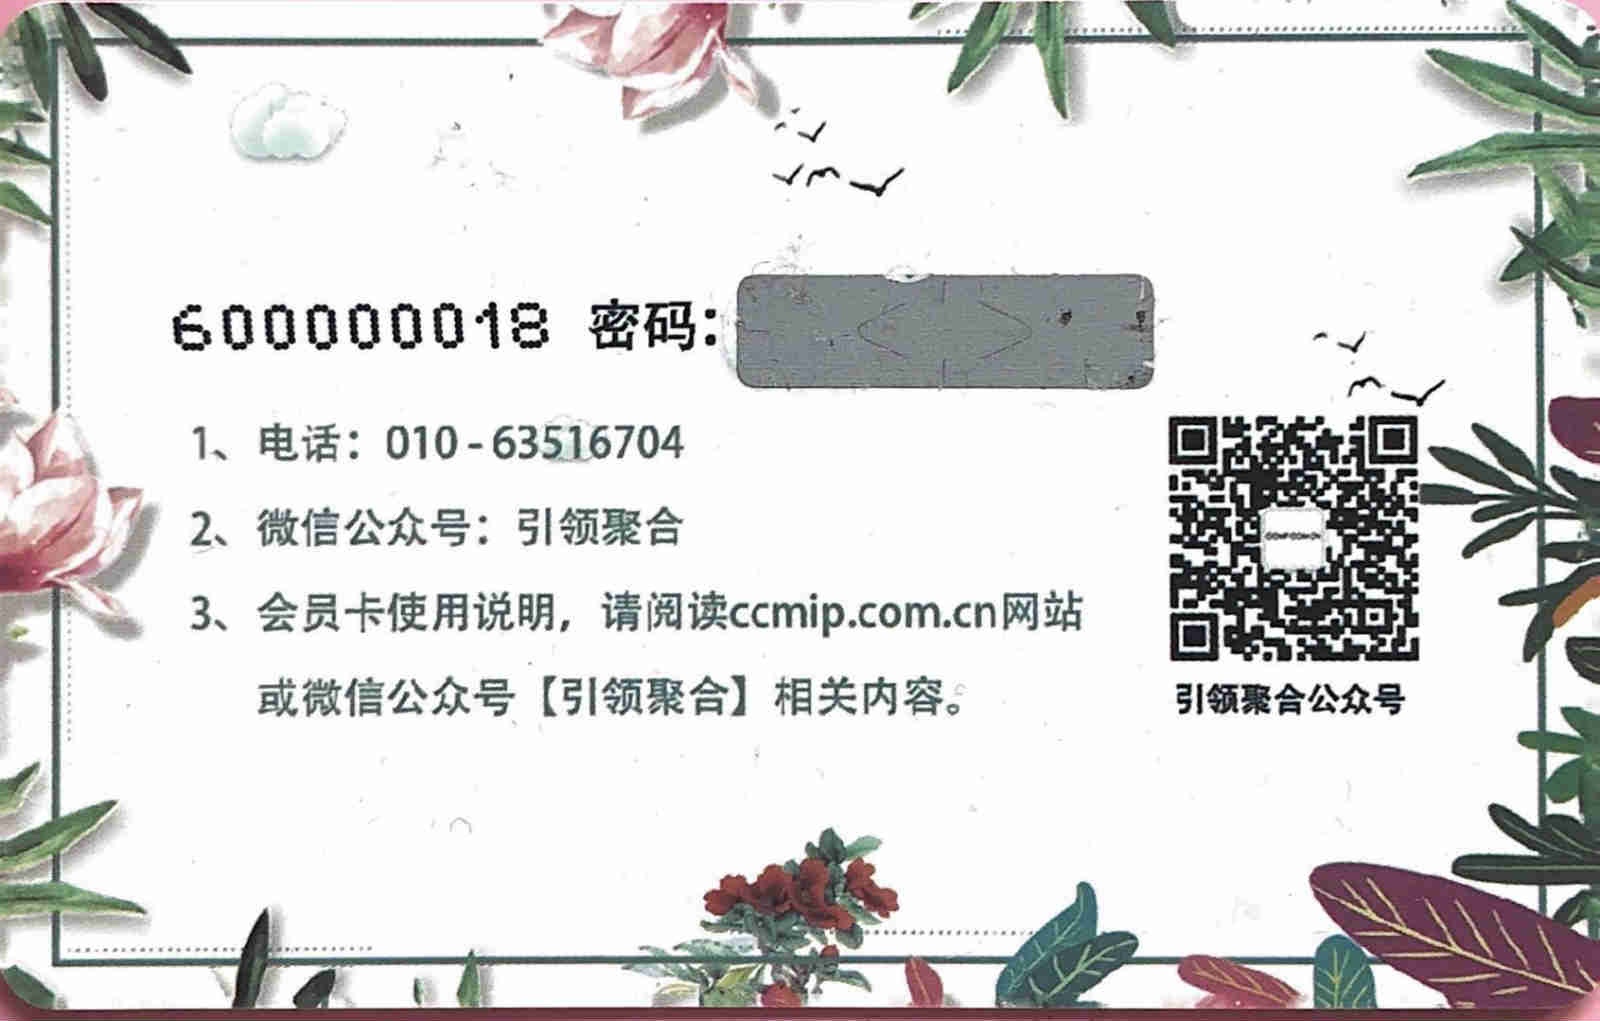 ccmip.com.cn软陶粘土行业网站-----会员卡使用规则说明